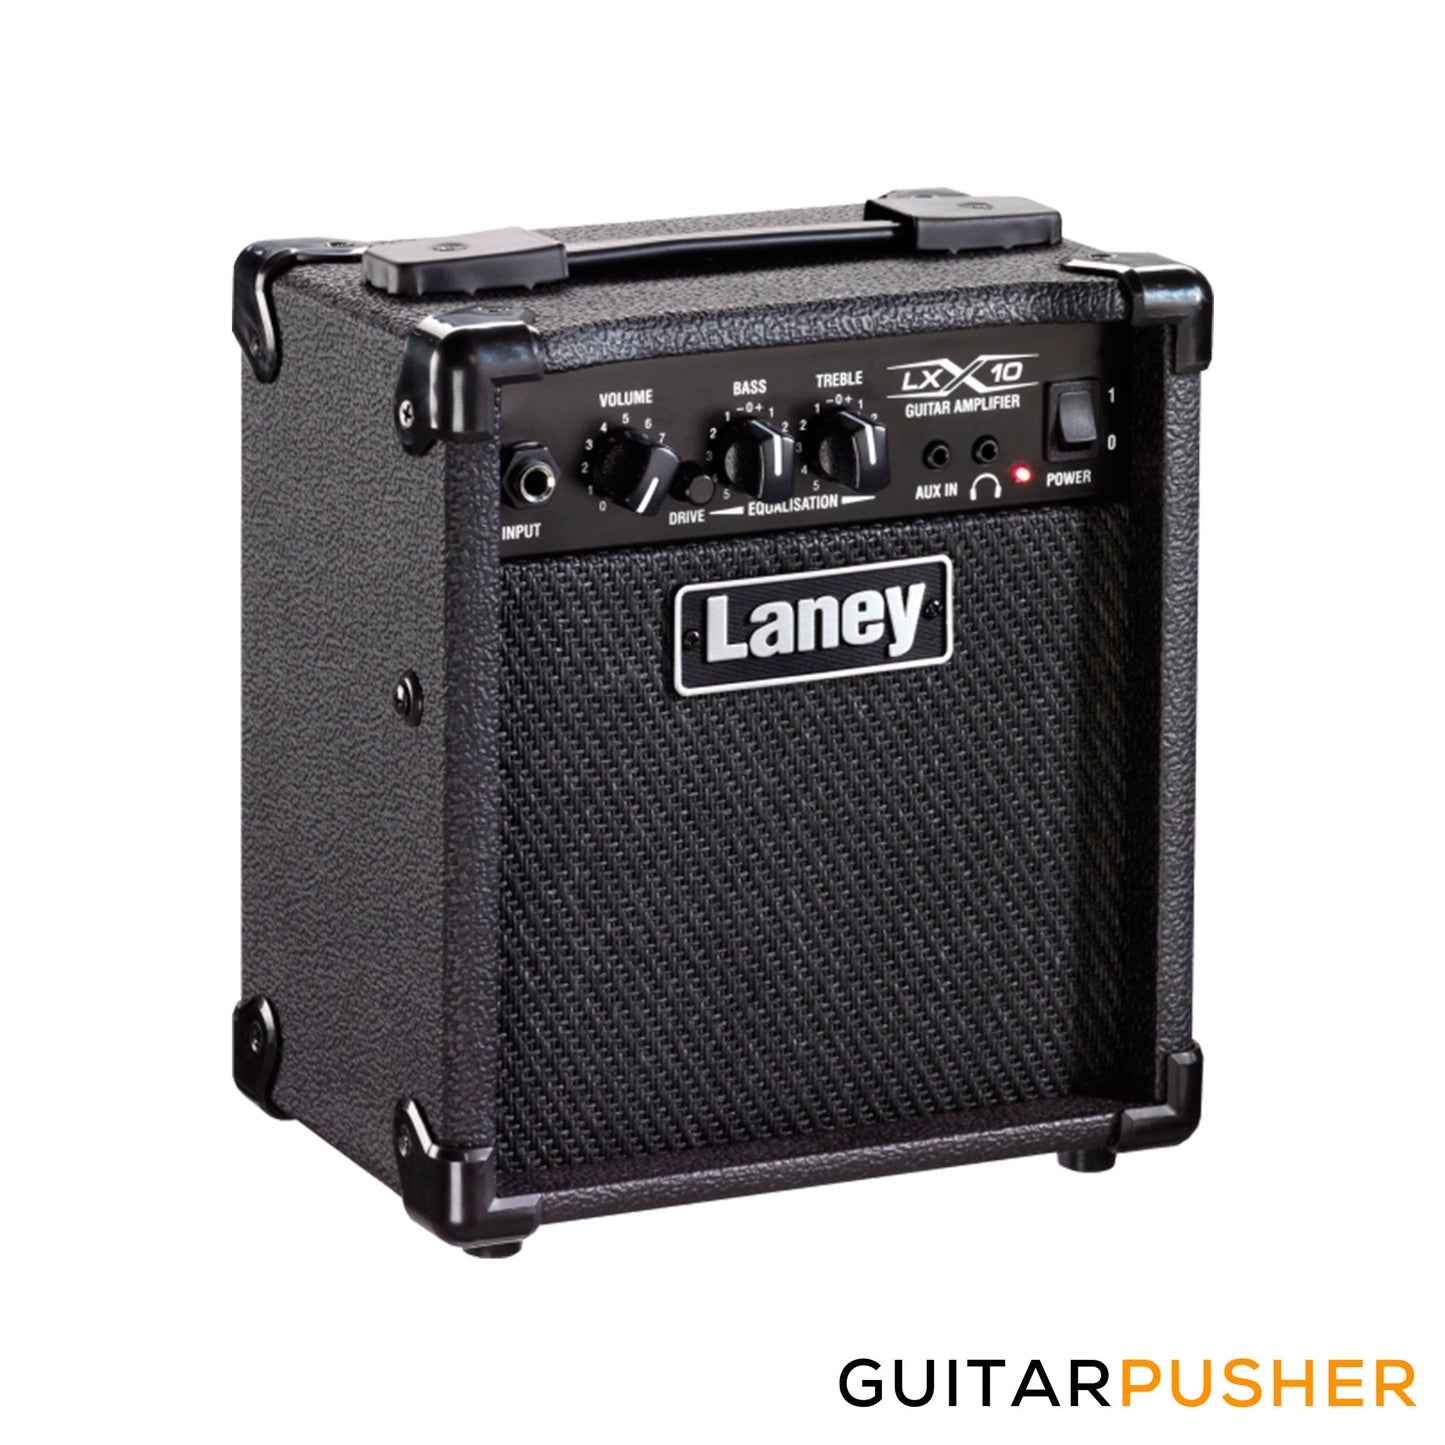 LANEY LX10 10-Watt Portable Combo Amplifier w/ 5" Driver - Black